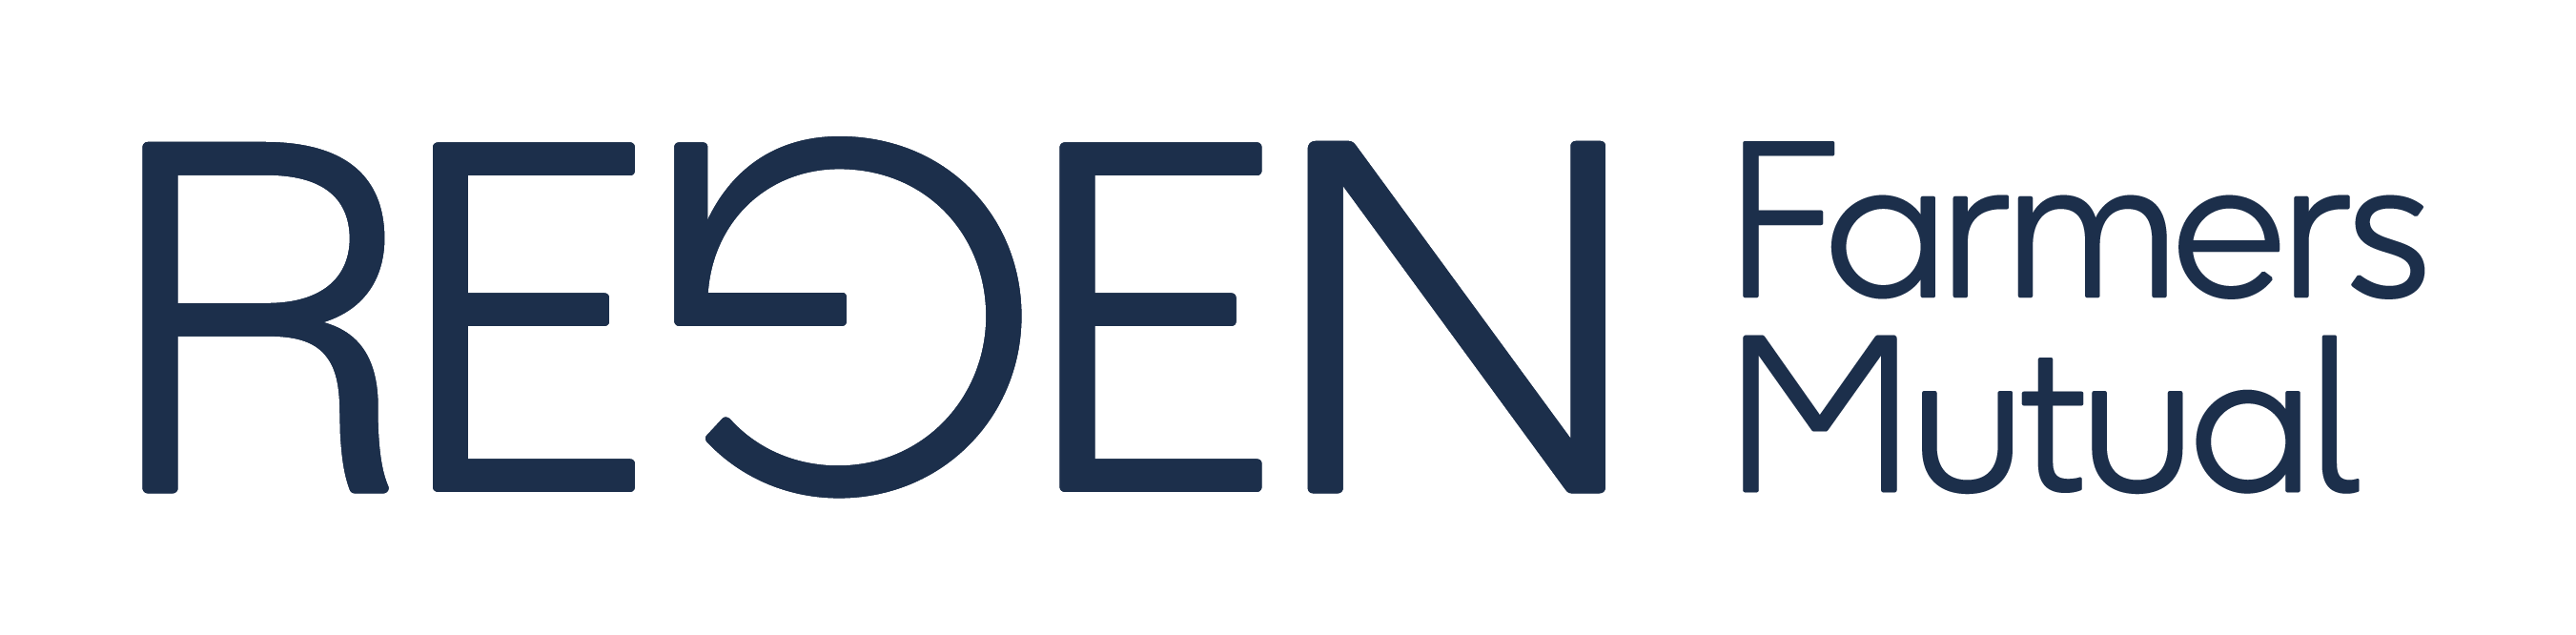 Image of the Regen Farmers Mutual Logo Double Dark Blue